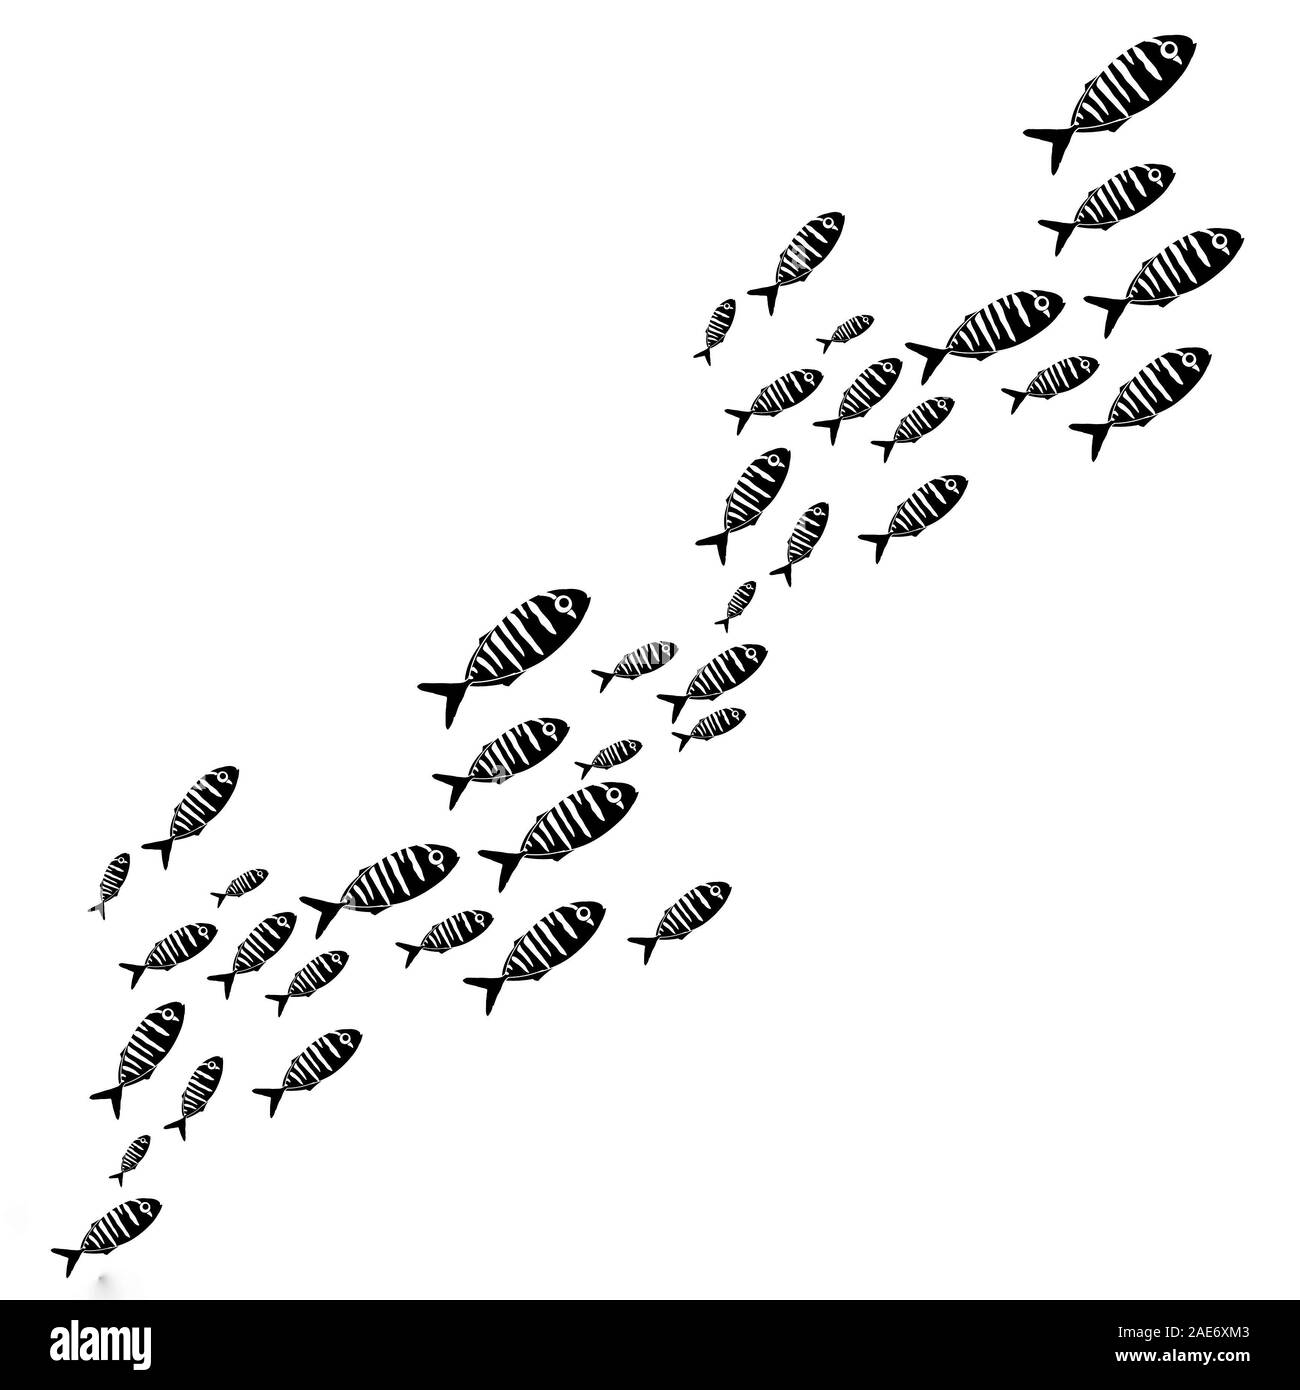 Silueta de grupo de mar, peces, animales pequeños underwater aislado en blanco. La vida en el mar pequeño patrón. El medio ambiente de los océanos y los ríos. Foto de stock